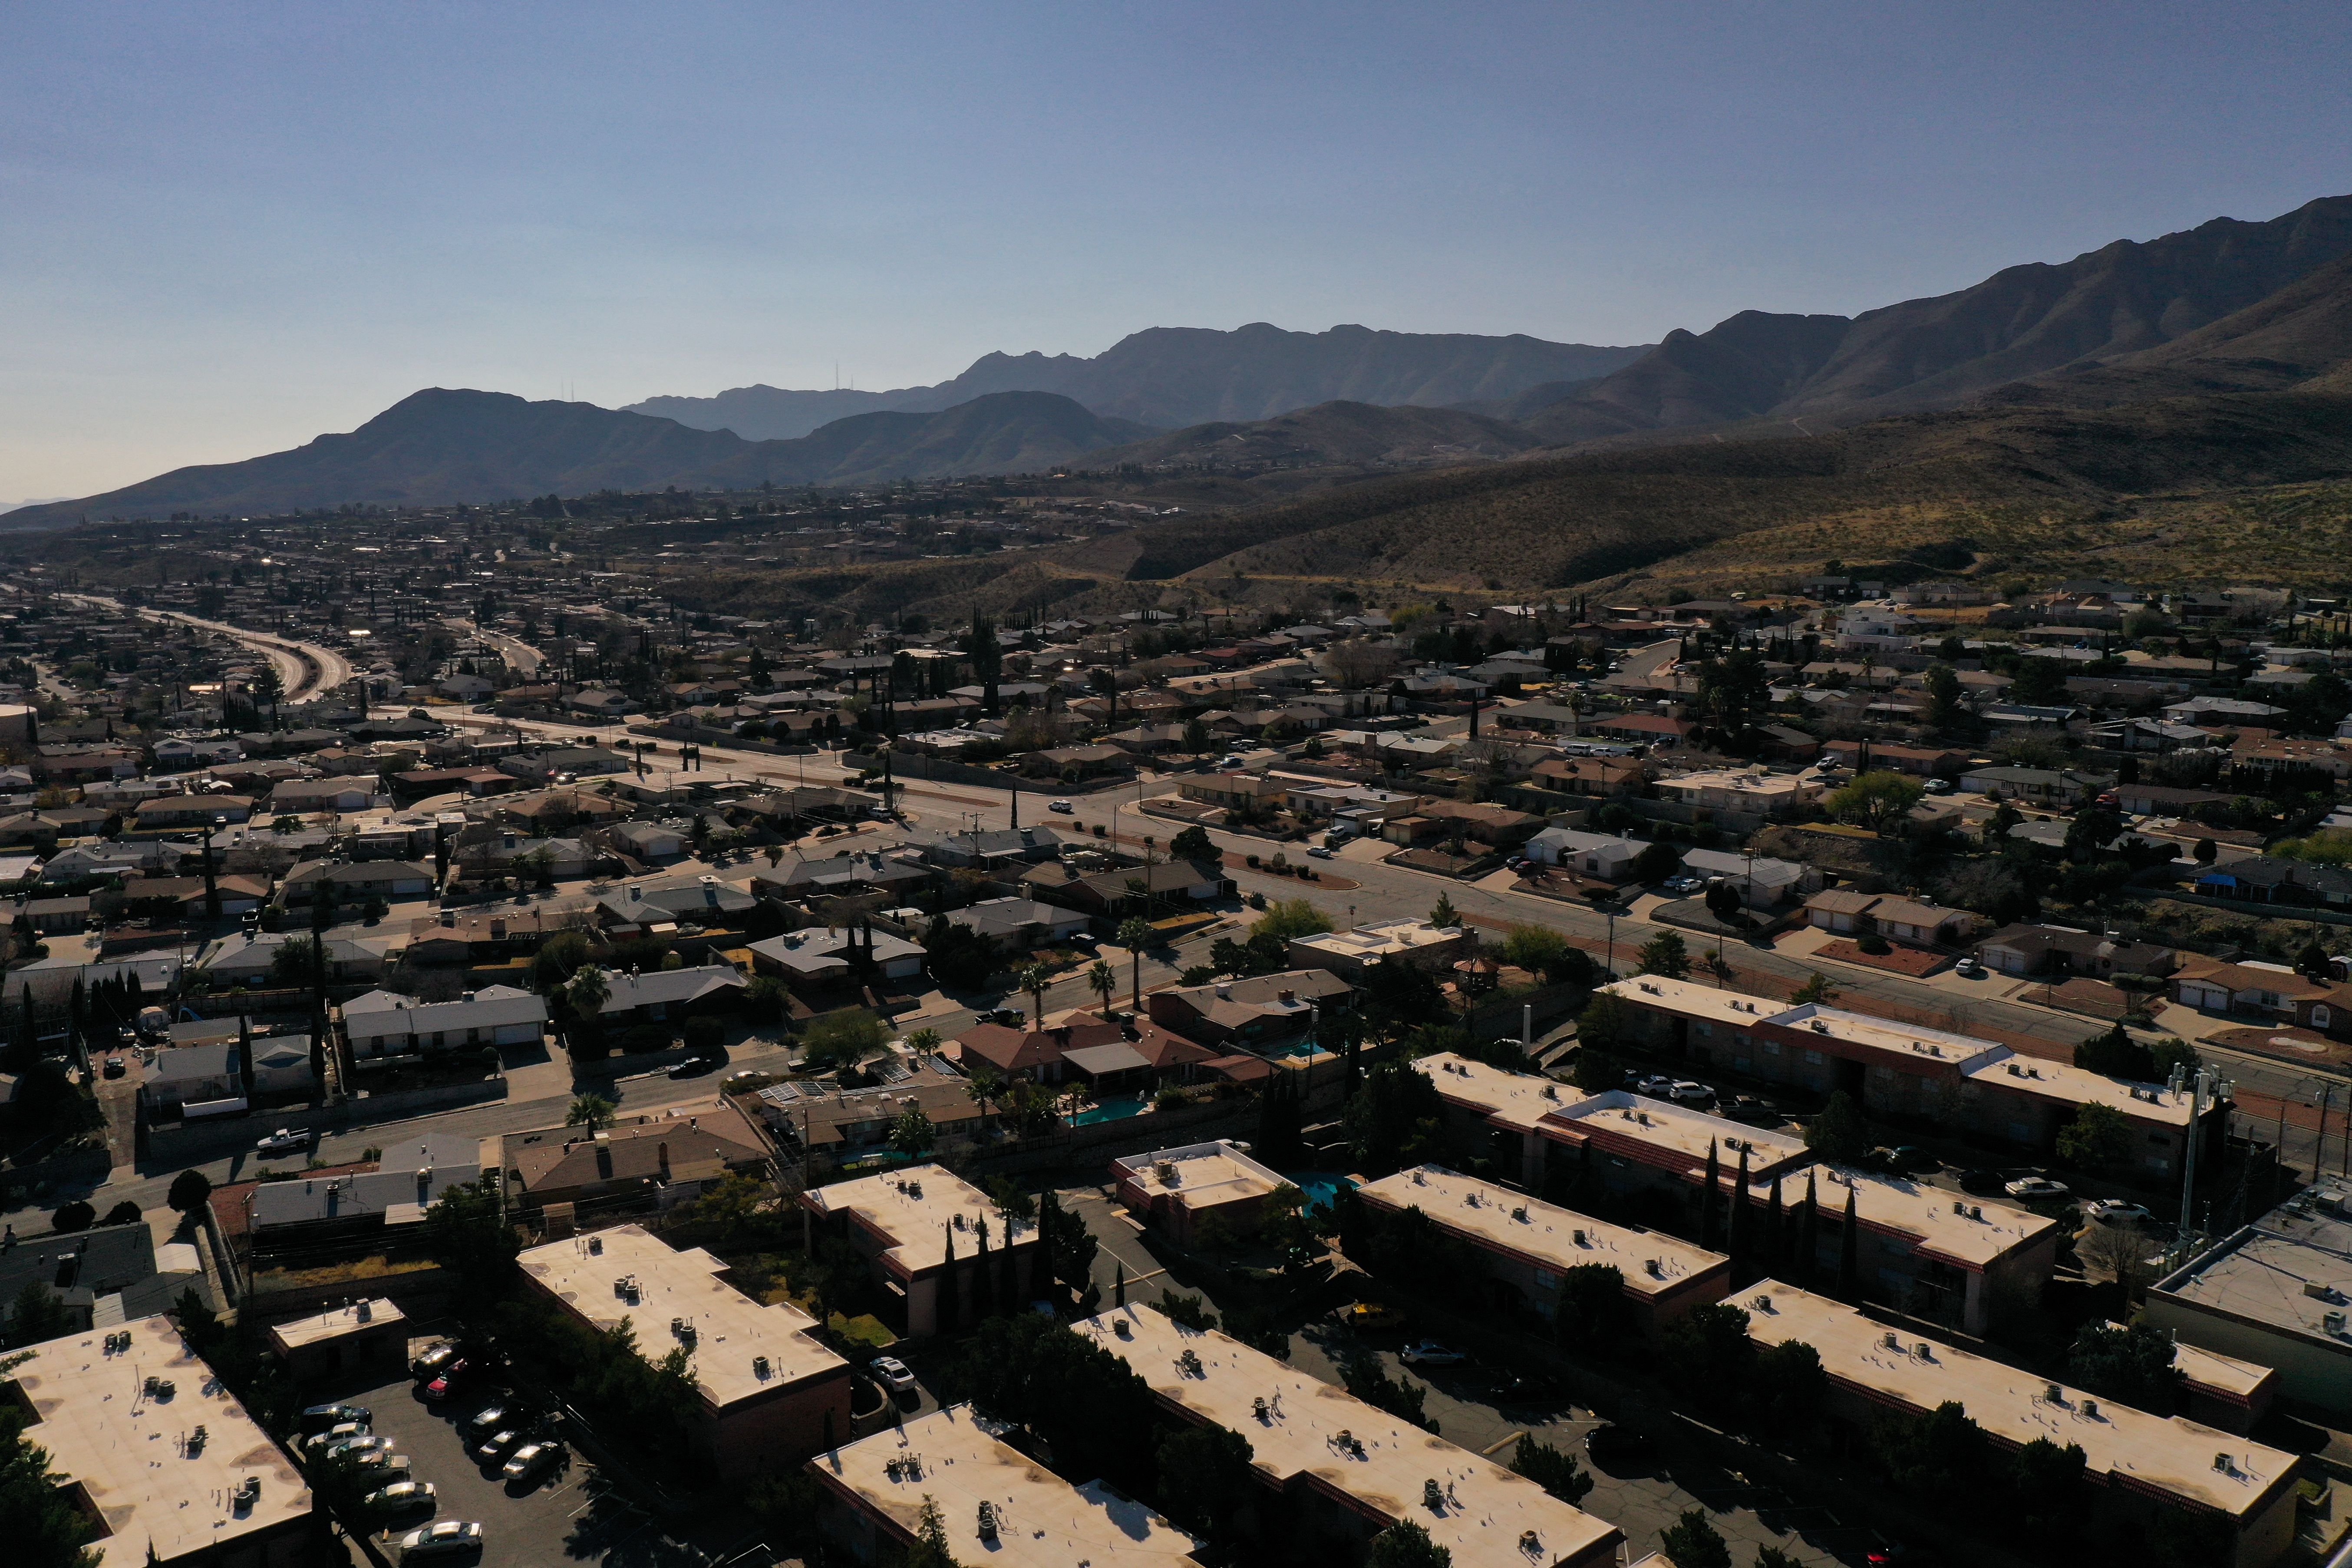 A neighborhood in El Paso, Texas